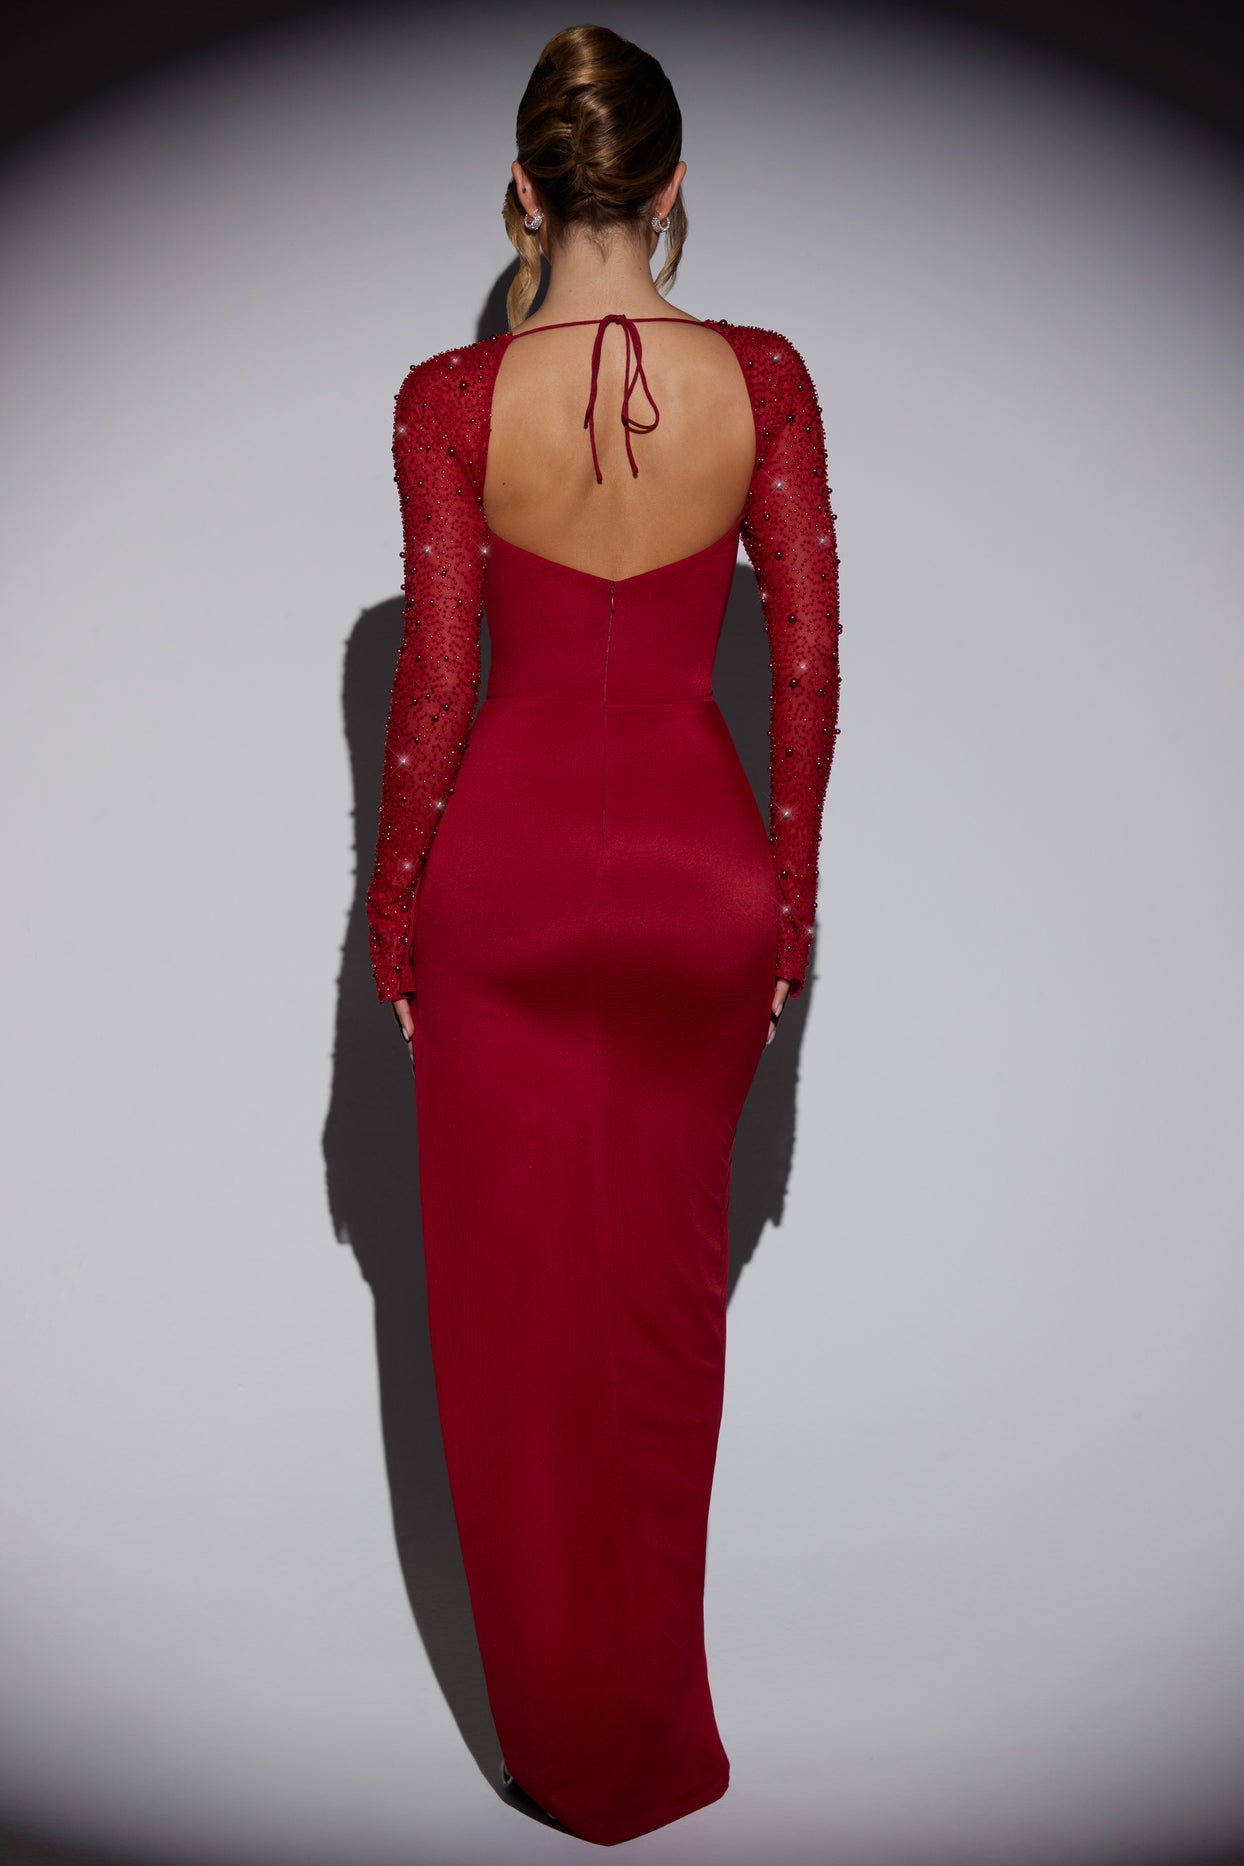 Zdobiona sukienka maxi z rozcięciami po bokach w kolorze czerwonym